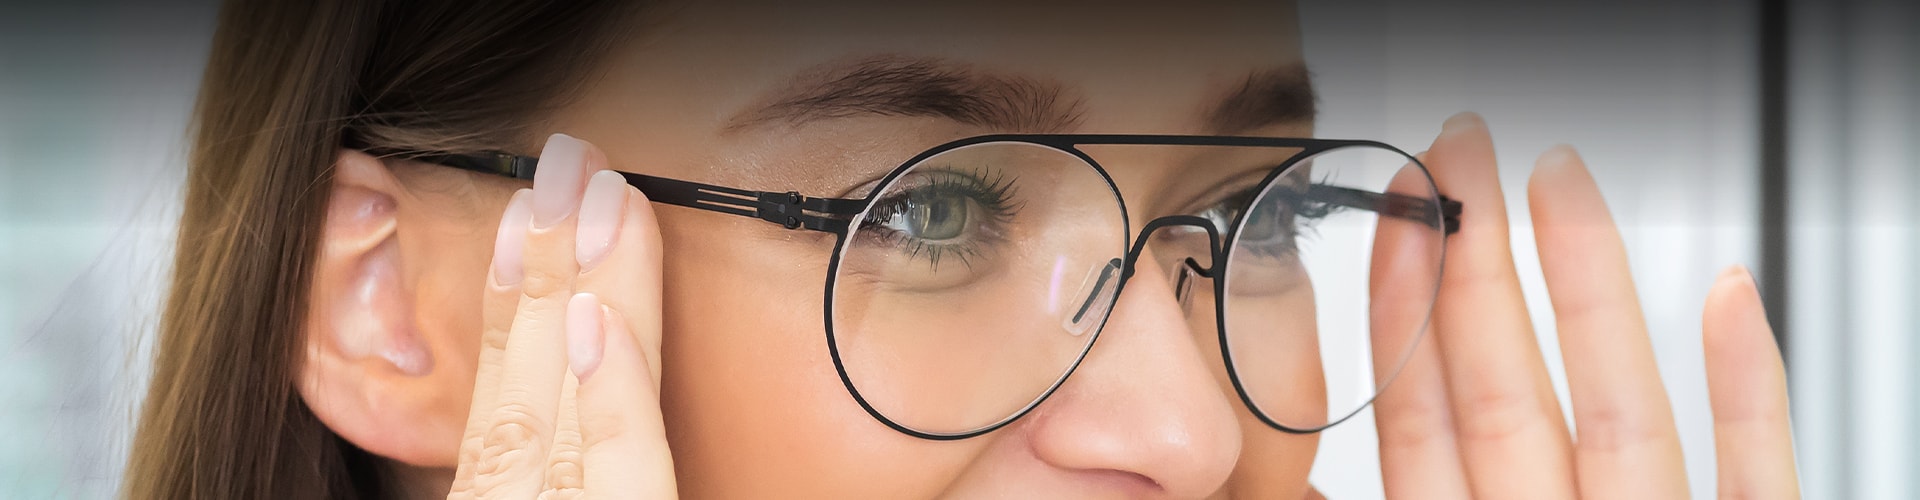 lenscare eyewear